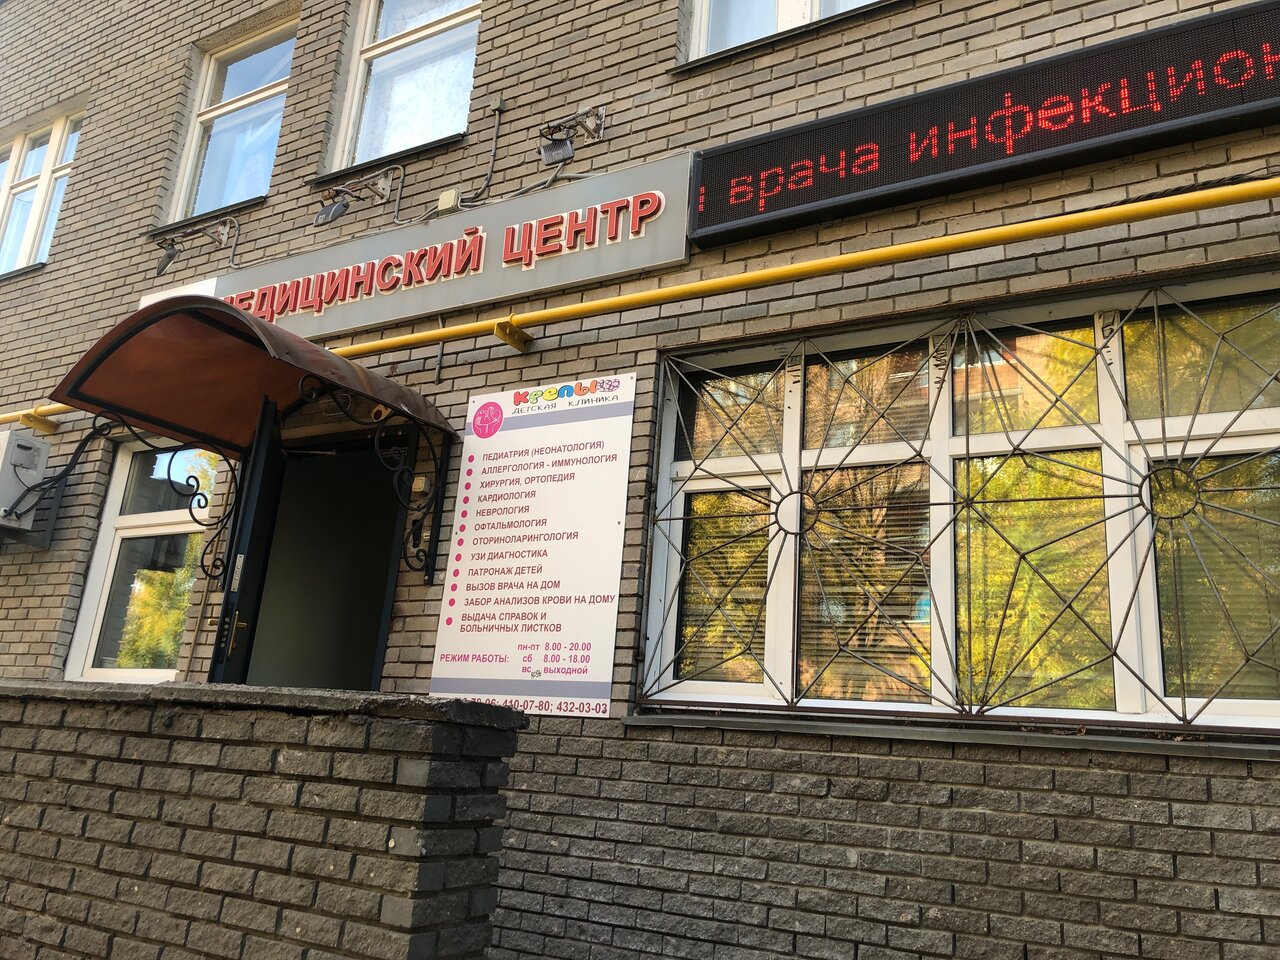 Стоматологическая клиника Женский центр, Нижний Новгород, ул. Генкиной, 61